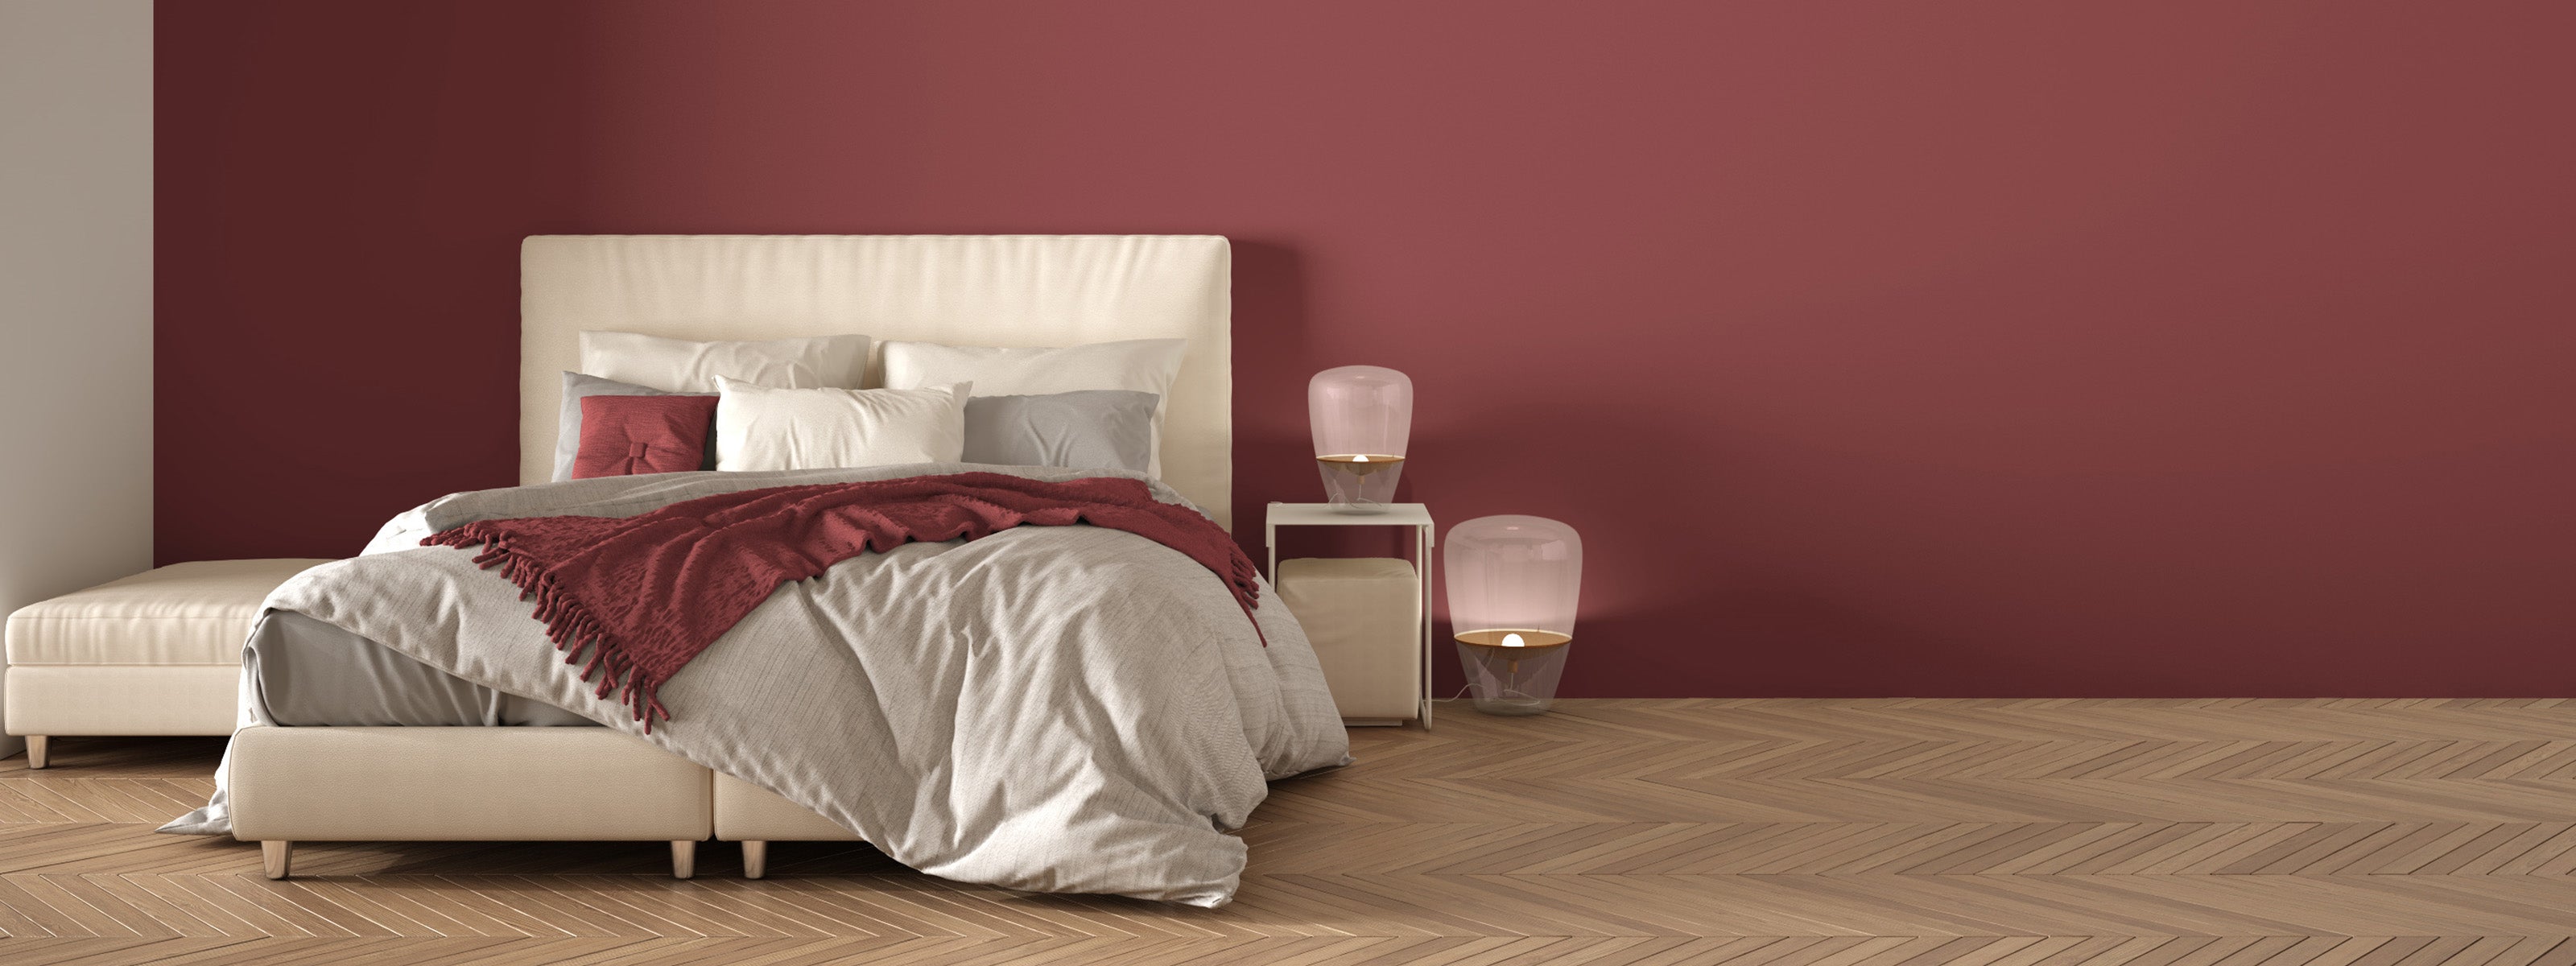 Esclusivo design della camera da letto Beliamo - Comfort e stile su Beliamo.com